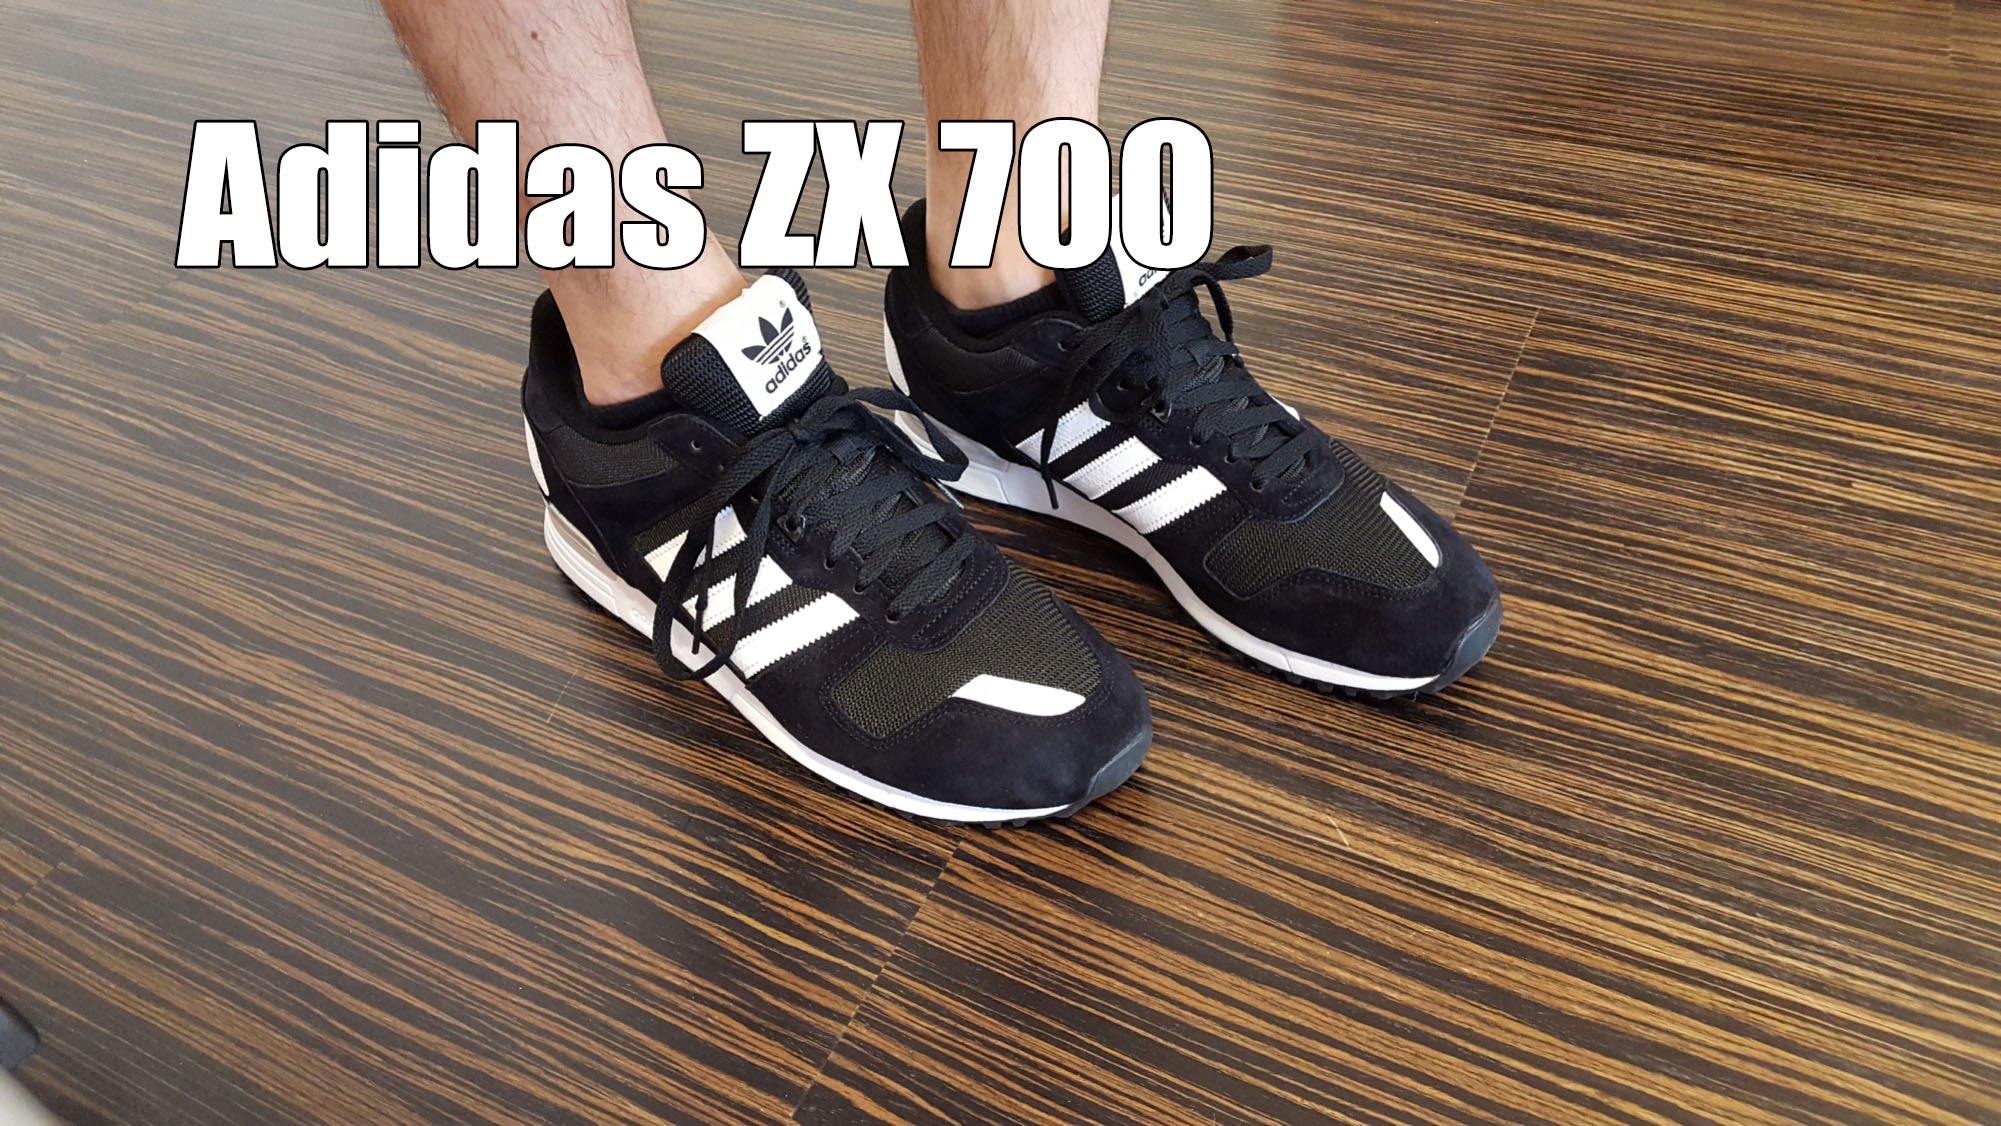 adidas zx 700 on feet